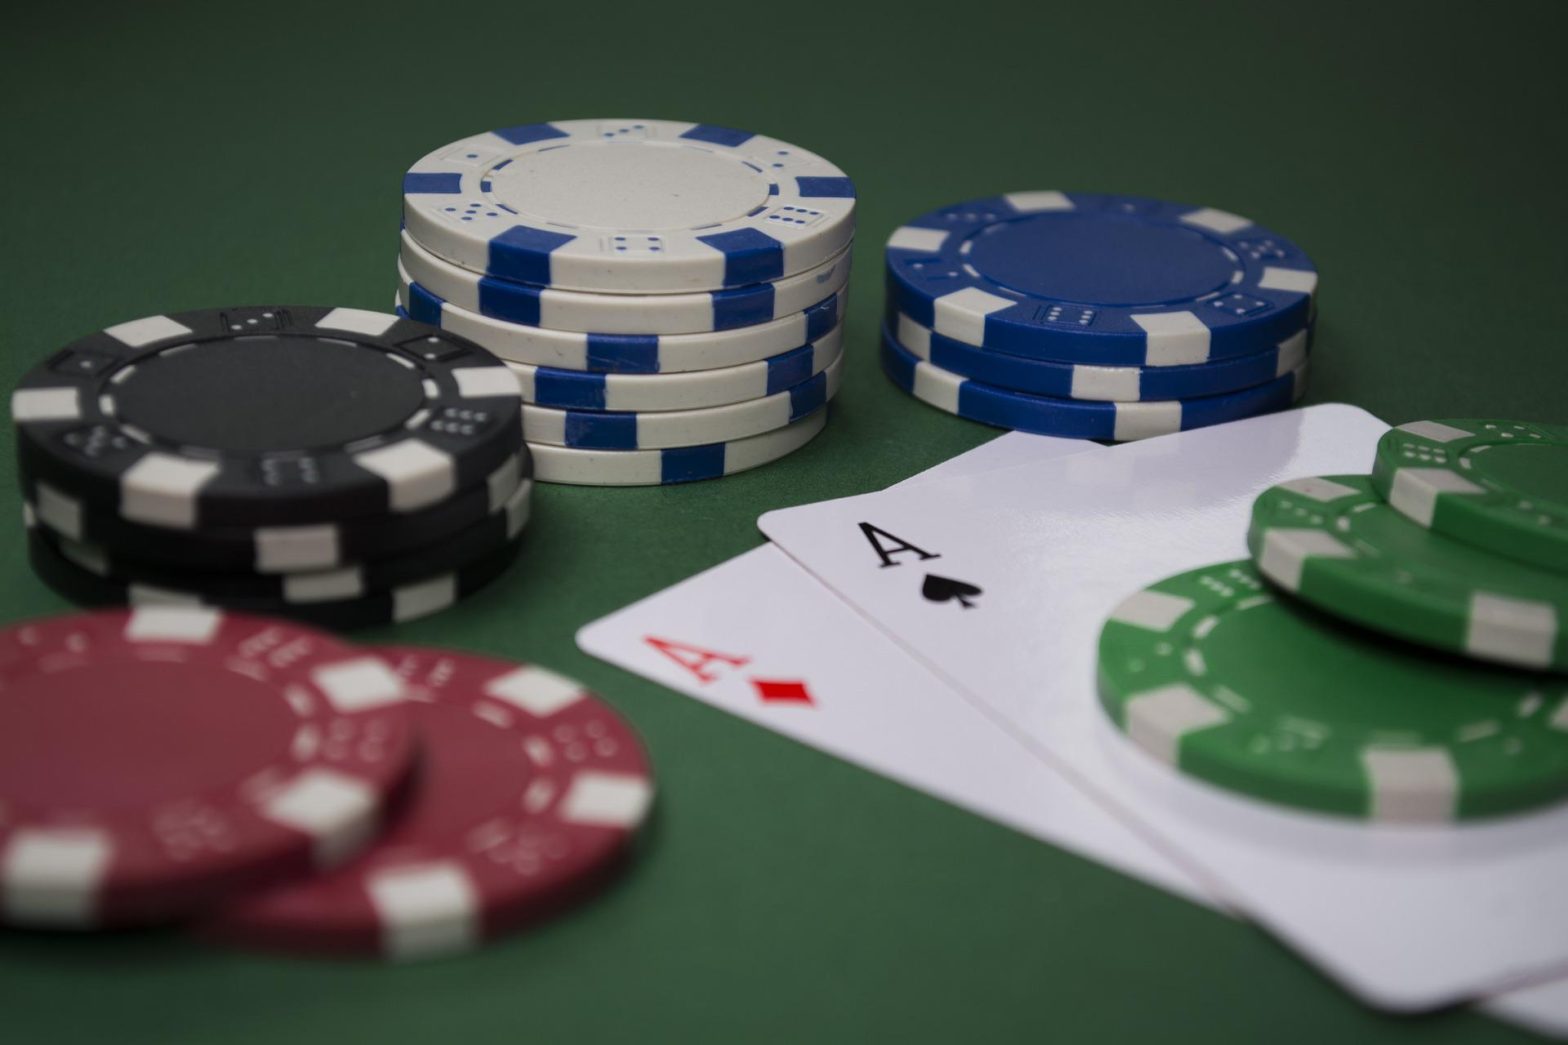 7 tips for winning money at Las Vegas casinos